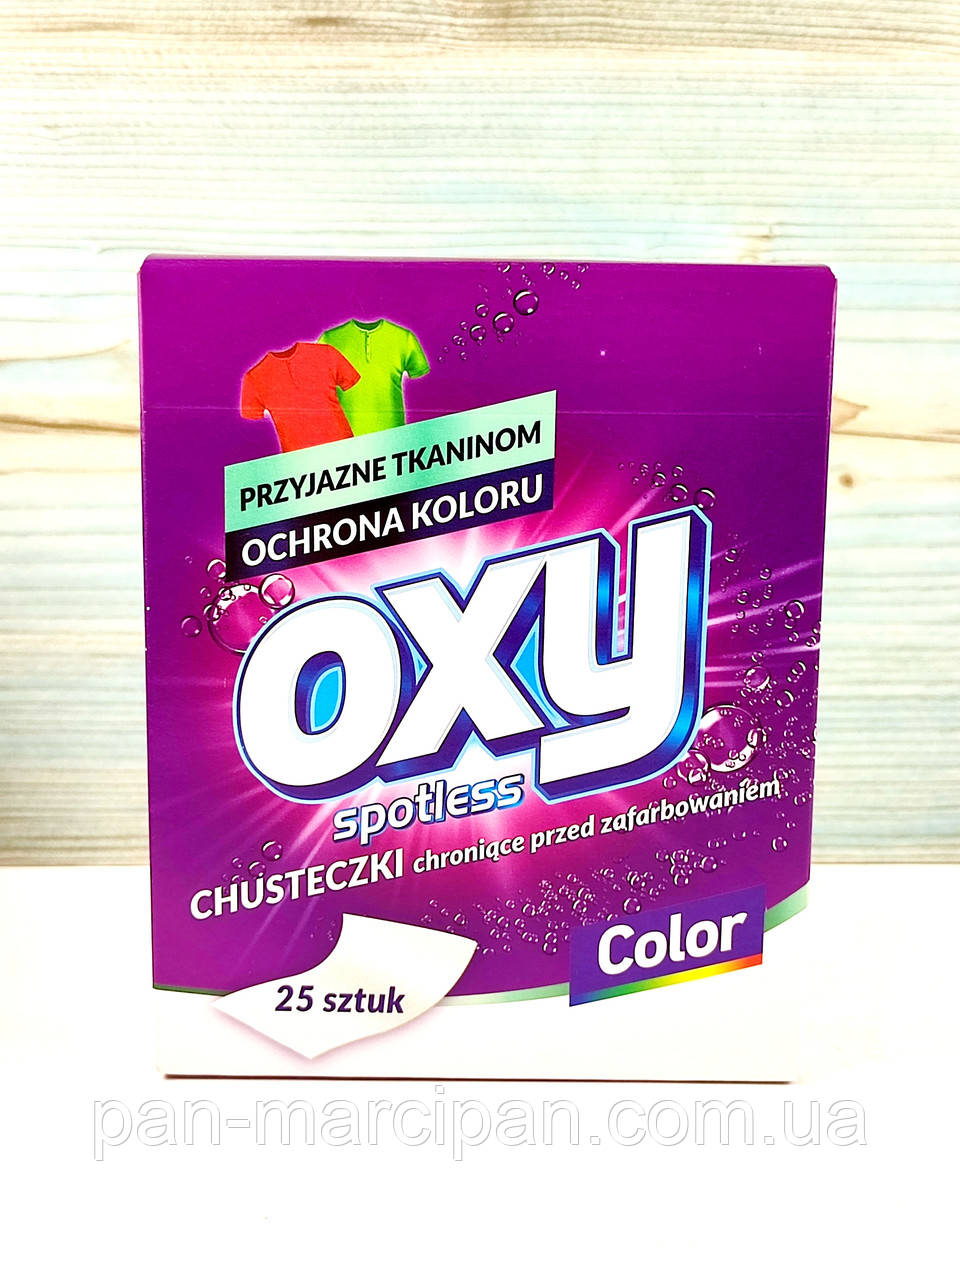 Абсорбувальні серветки для прання кольорової білизни Oxy Color 25 шт (Польща)